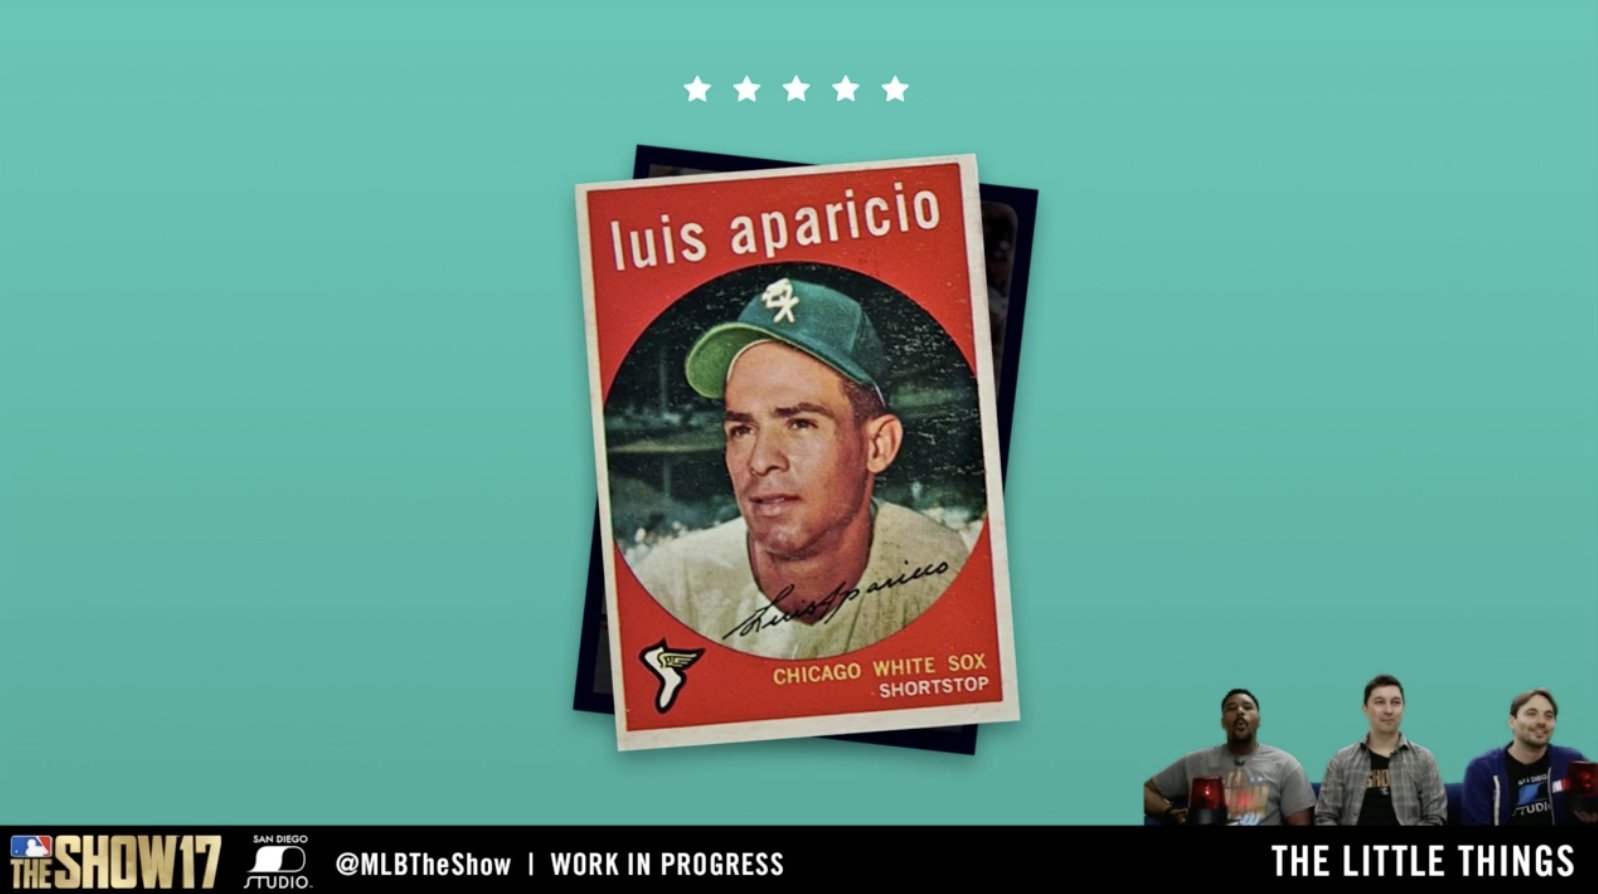 Luis Aparicio baseball card (Chicago White Sox) 2017 Topps